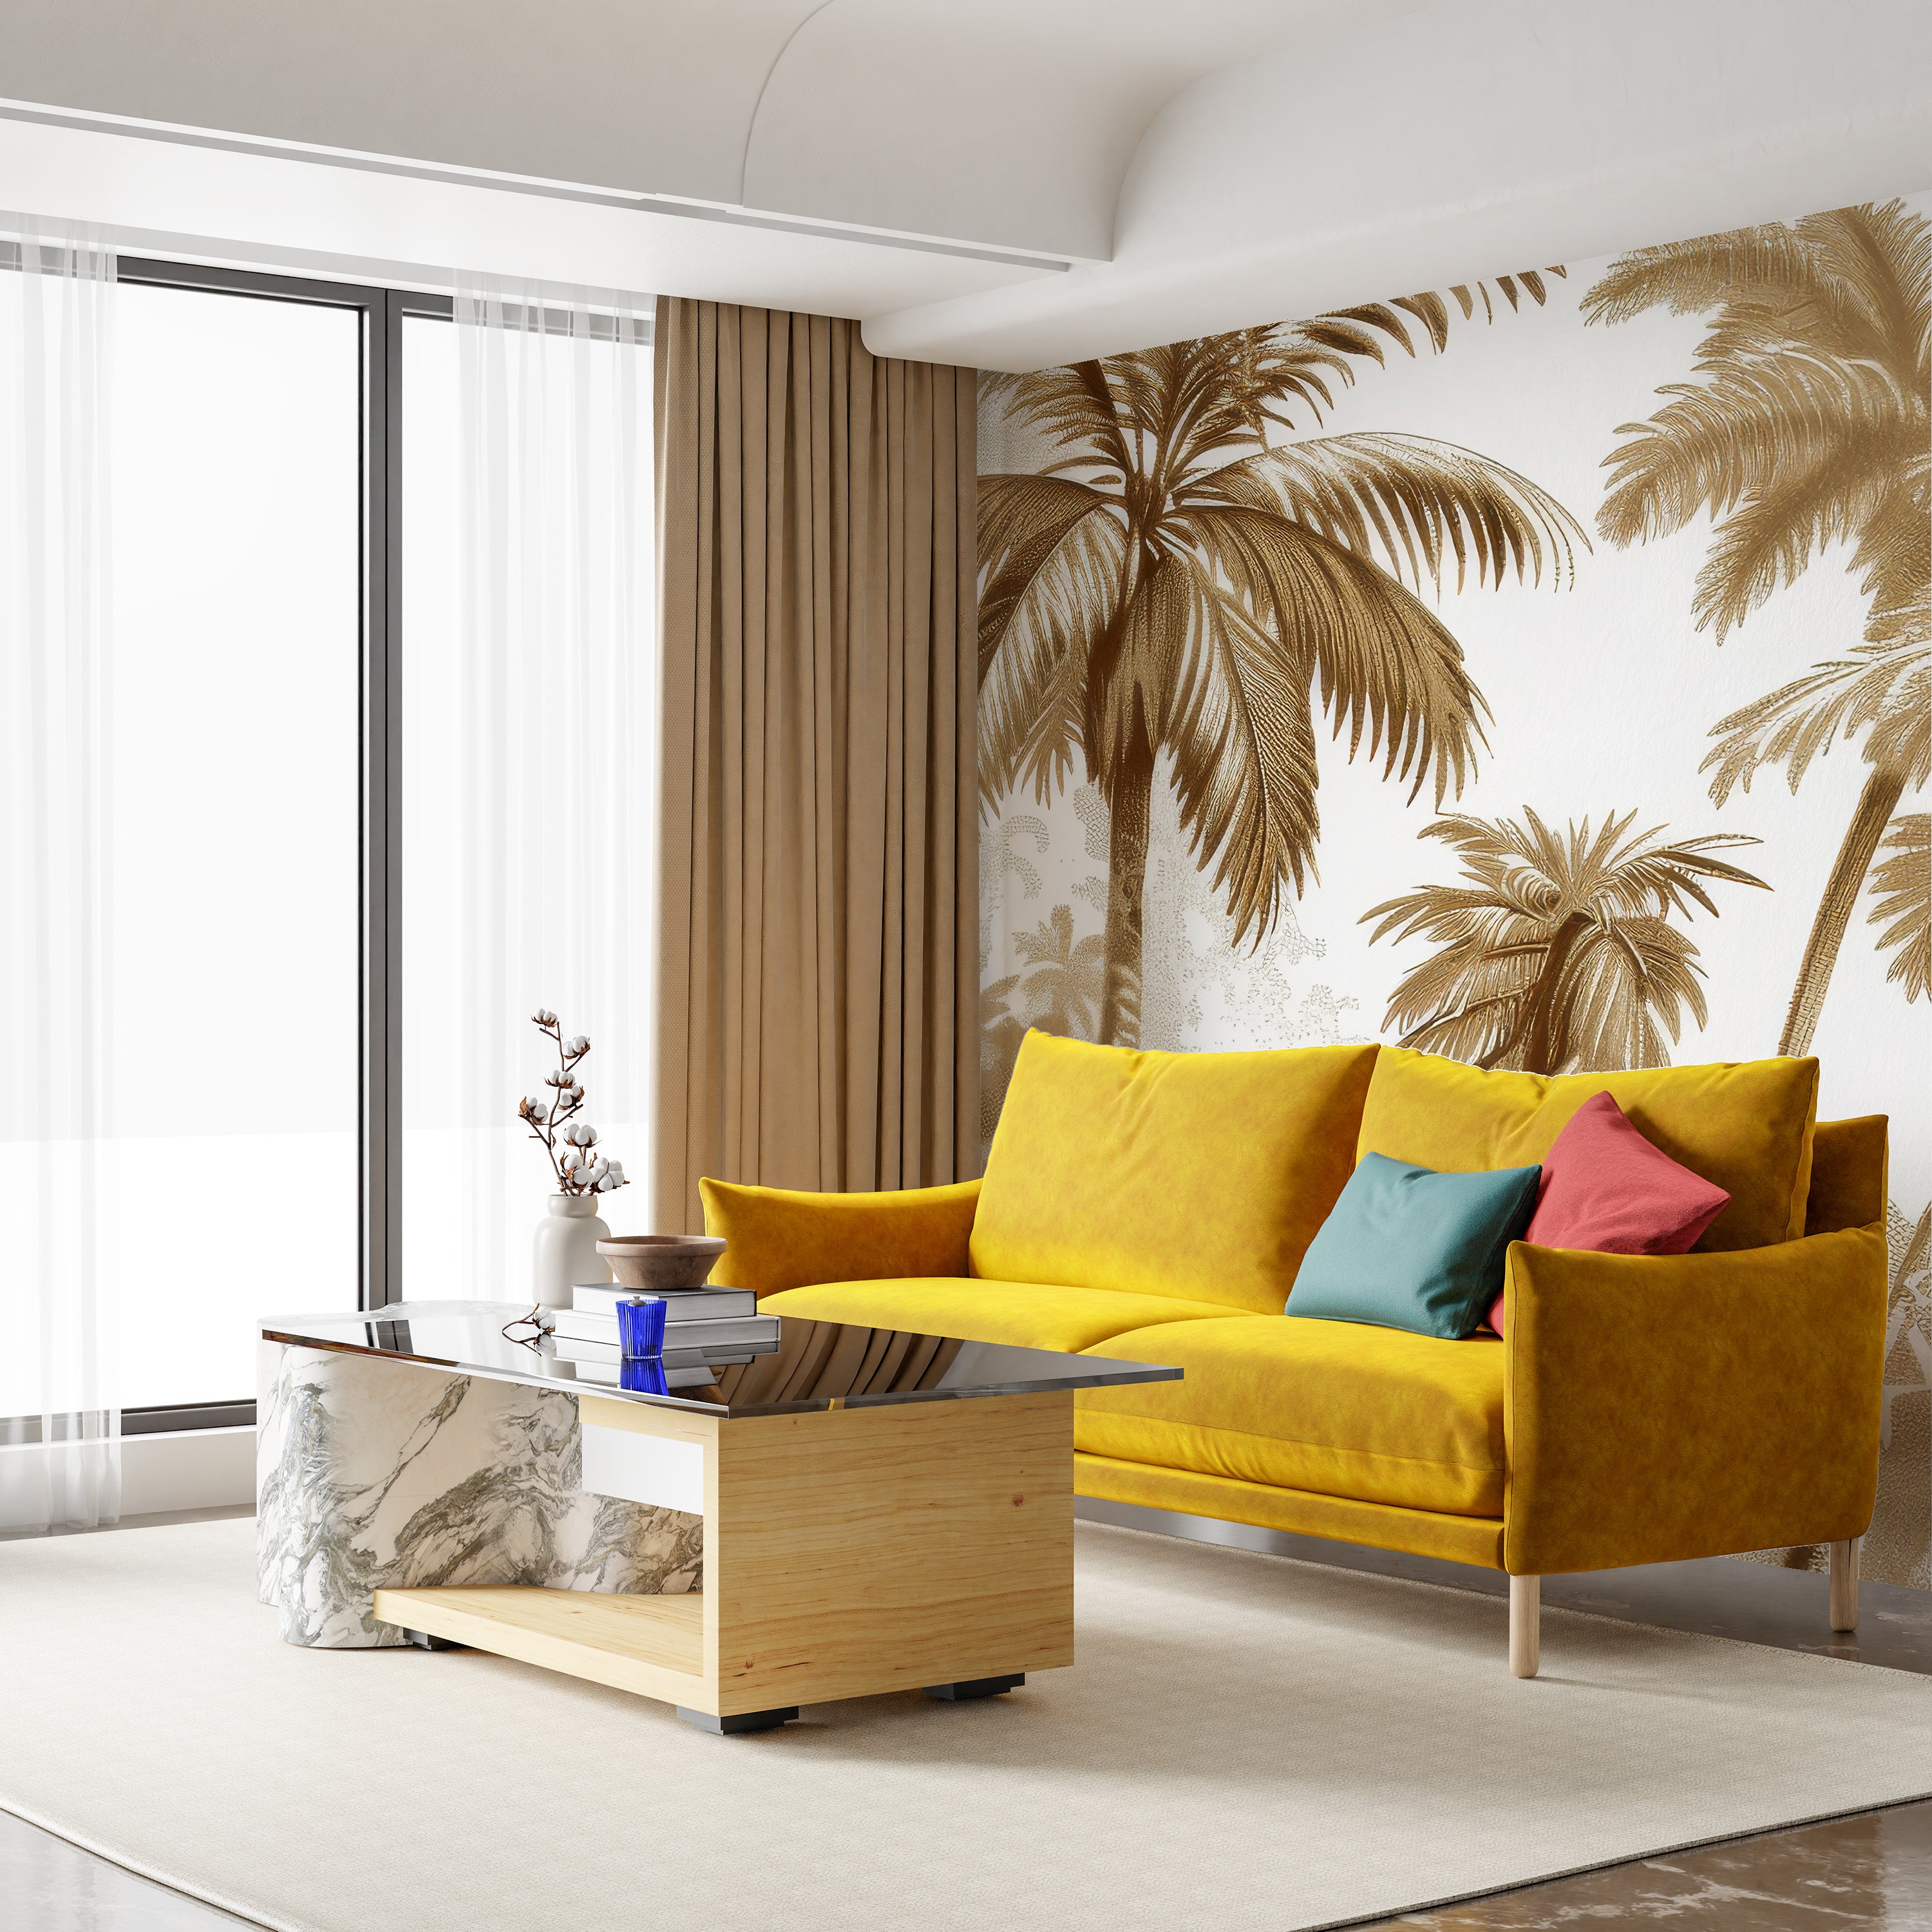 Luxe Tropical : Papier peint jungle stylisée en brun et blanc